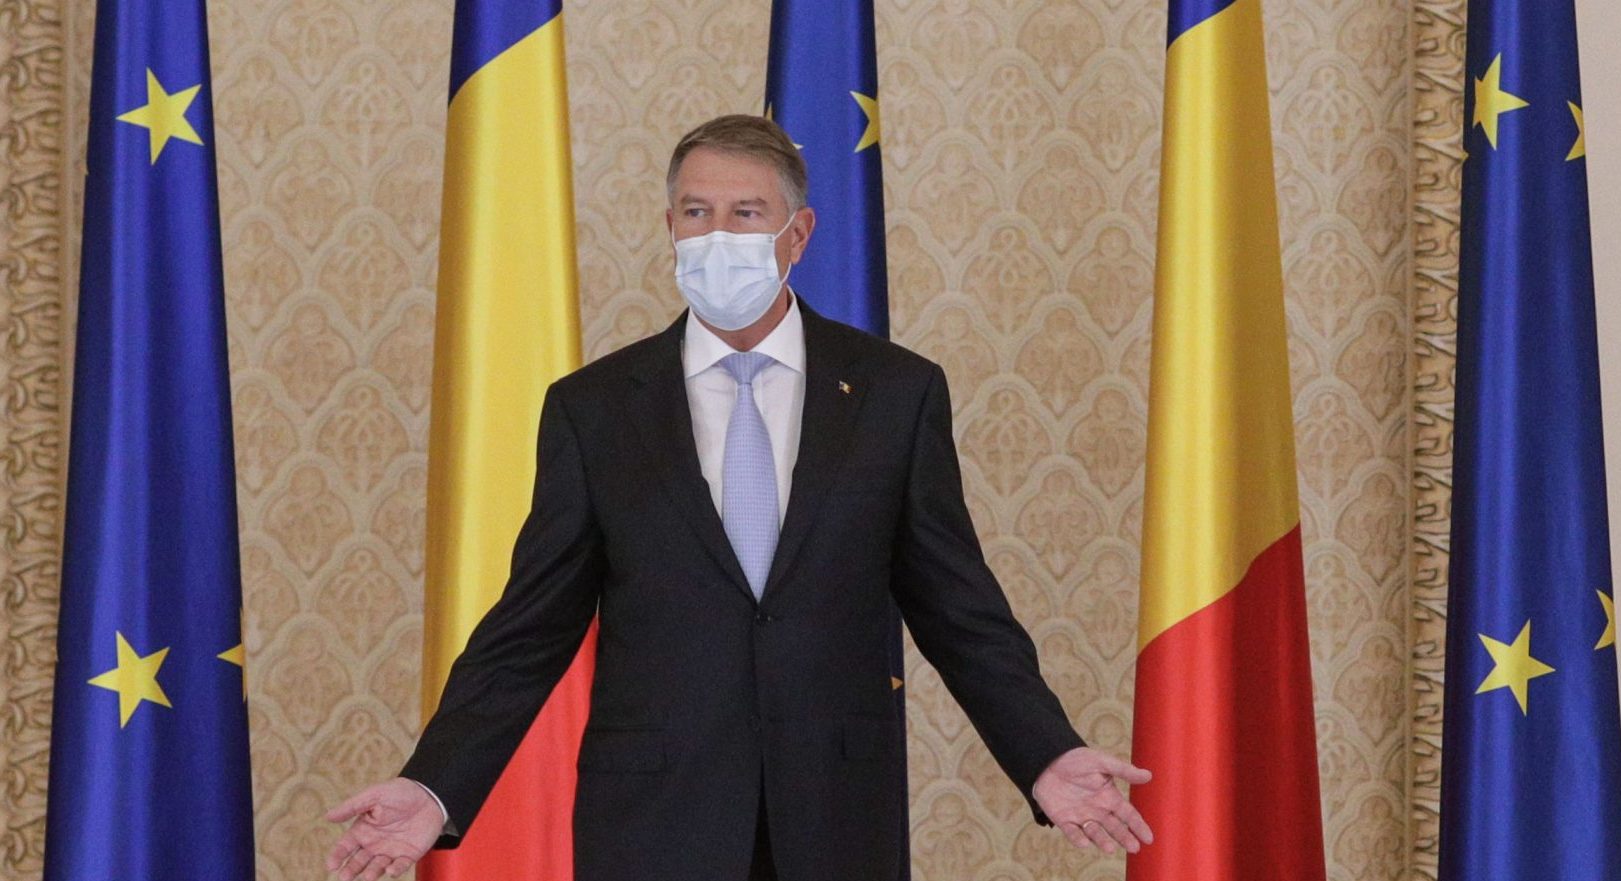 Președintele României: Noi suntem de acord cu noul pachet de sancțiuni împotriva Rusiei (Video)